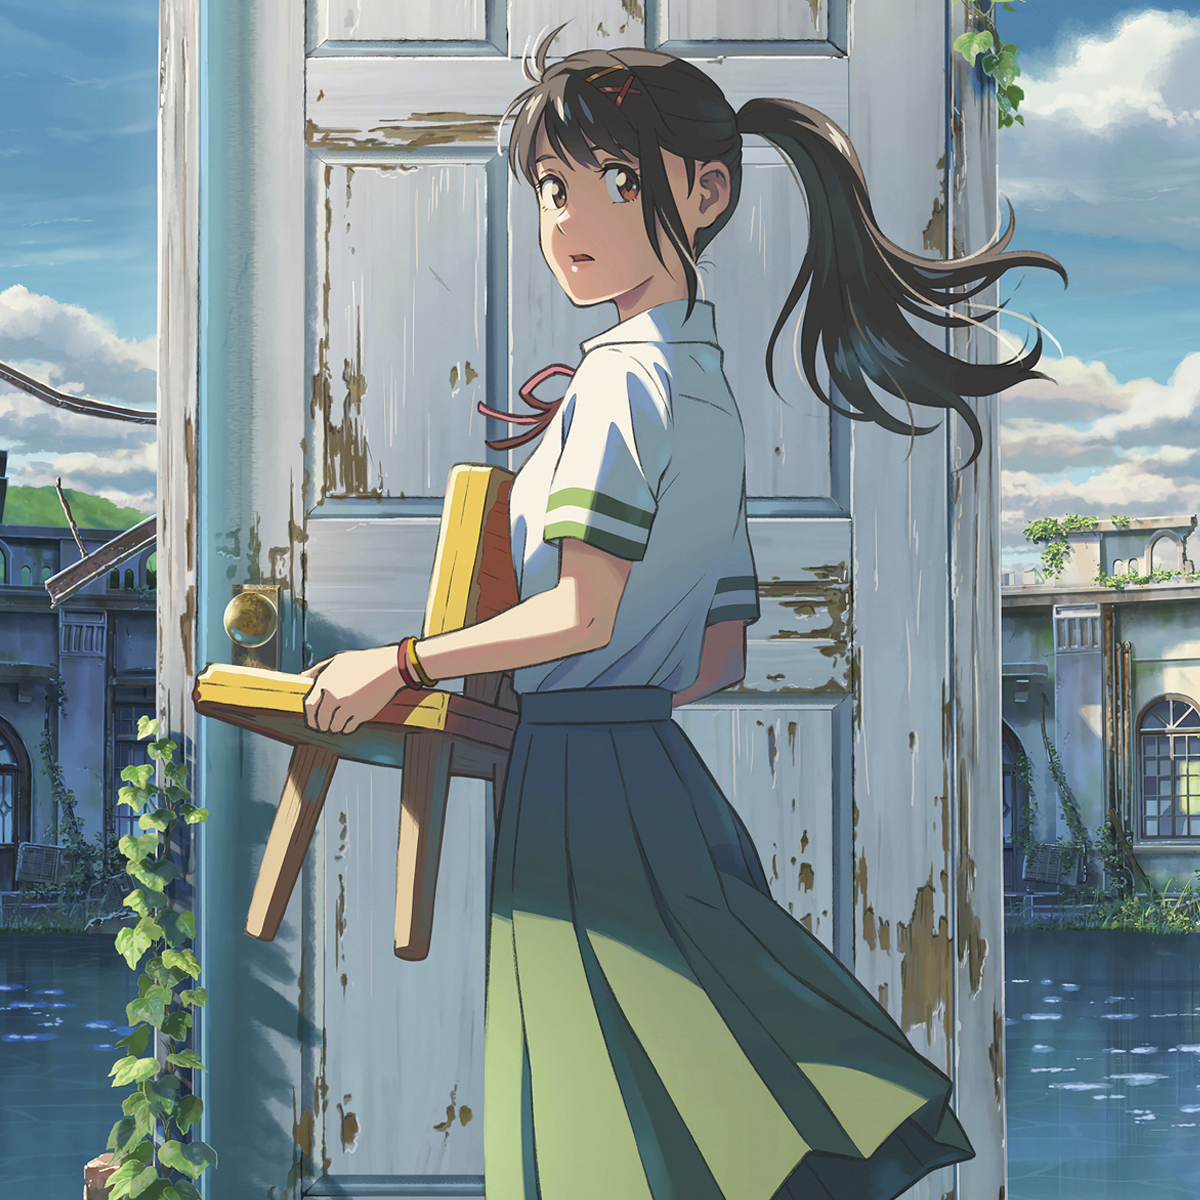 Рецензии «Афиши» на аниме «Судзумэ закрывает двери» Макото Синкая и  «Академию искусств» Лю Цзяня - Афиша Daily